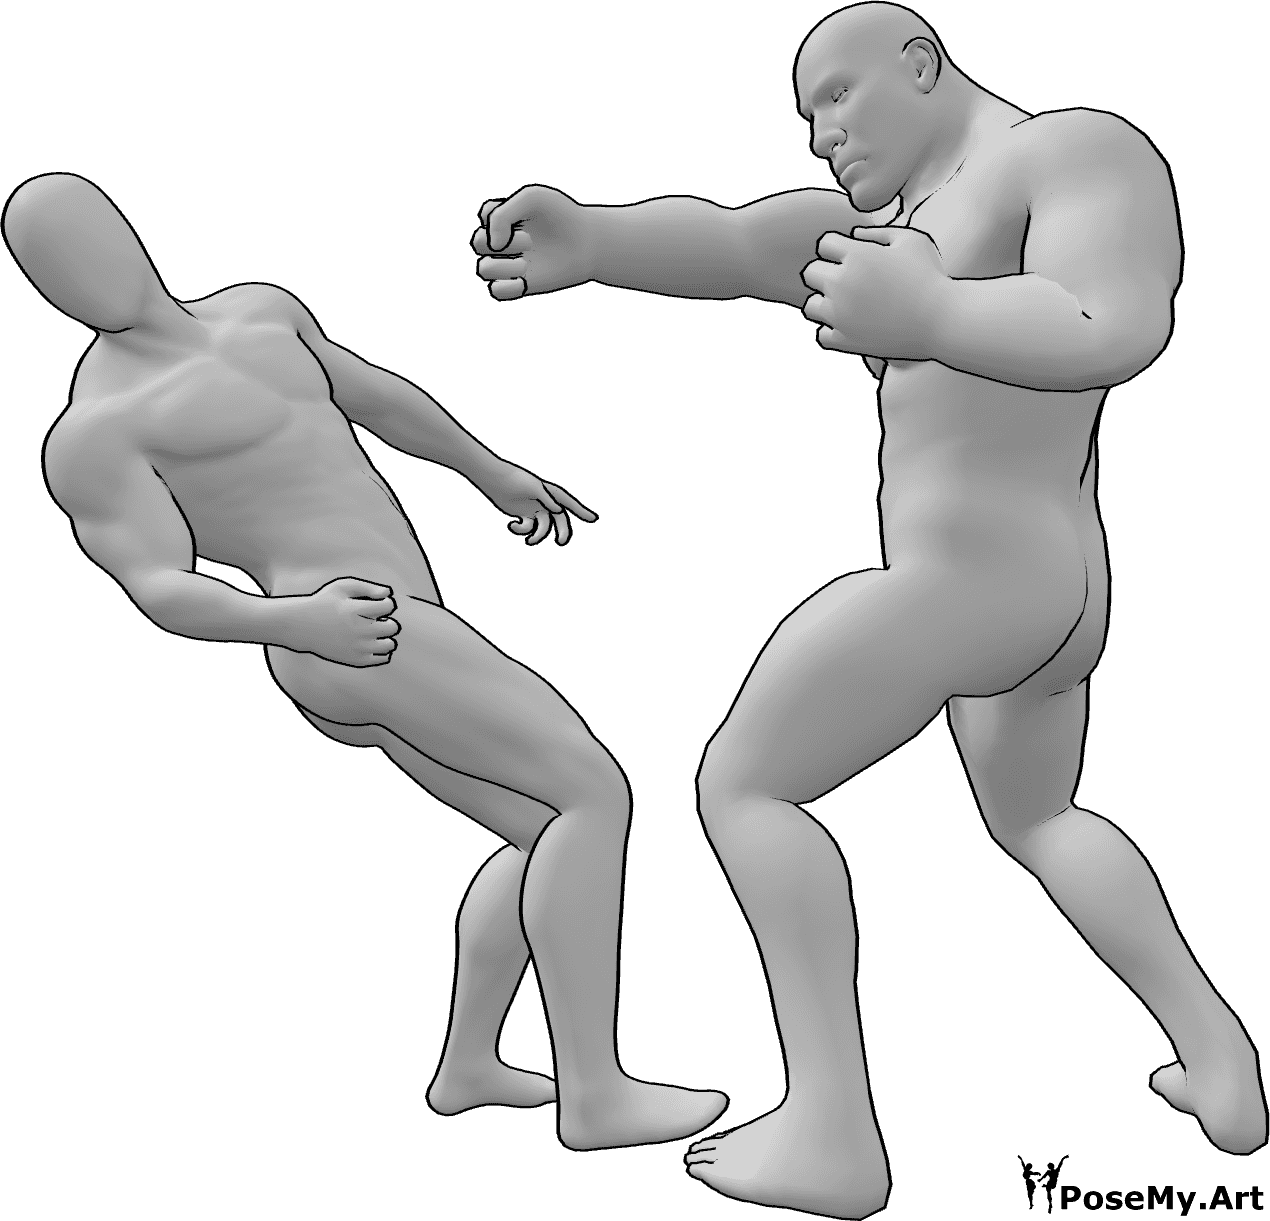 Referencia de poses- Brute pose de lucha masculina - Macho bruto noquea al otro macho y este cae de espaldas posa